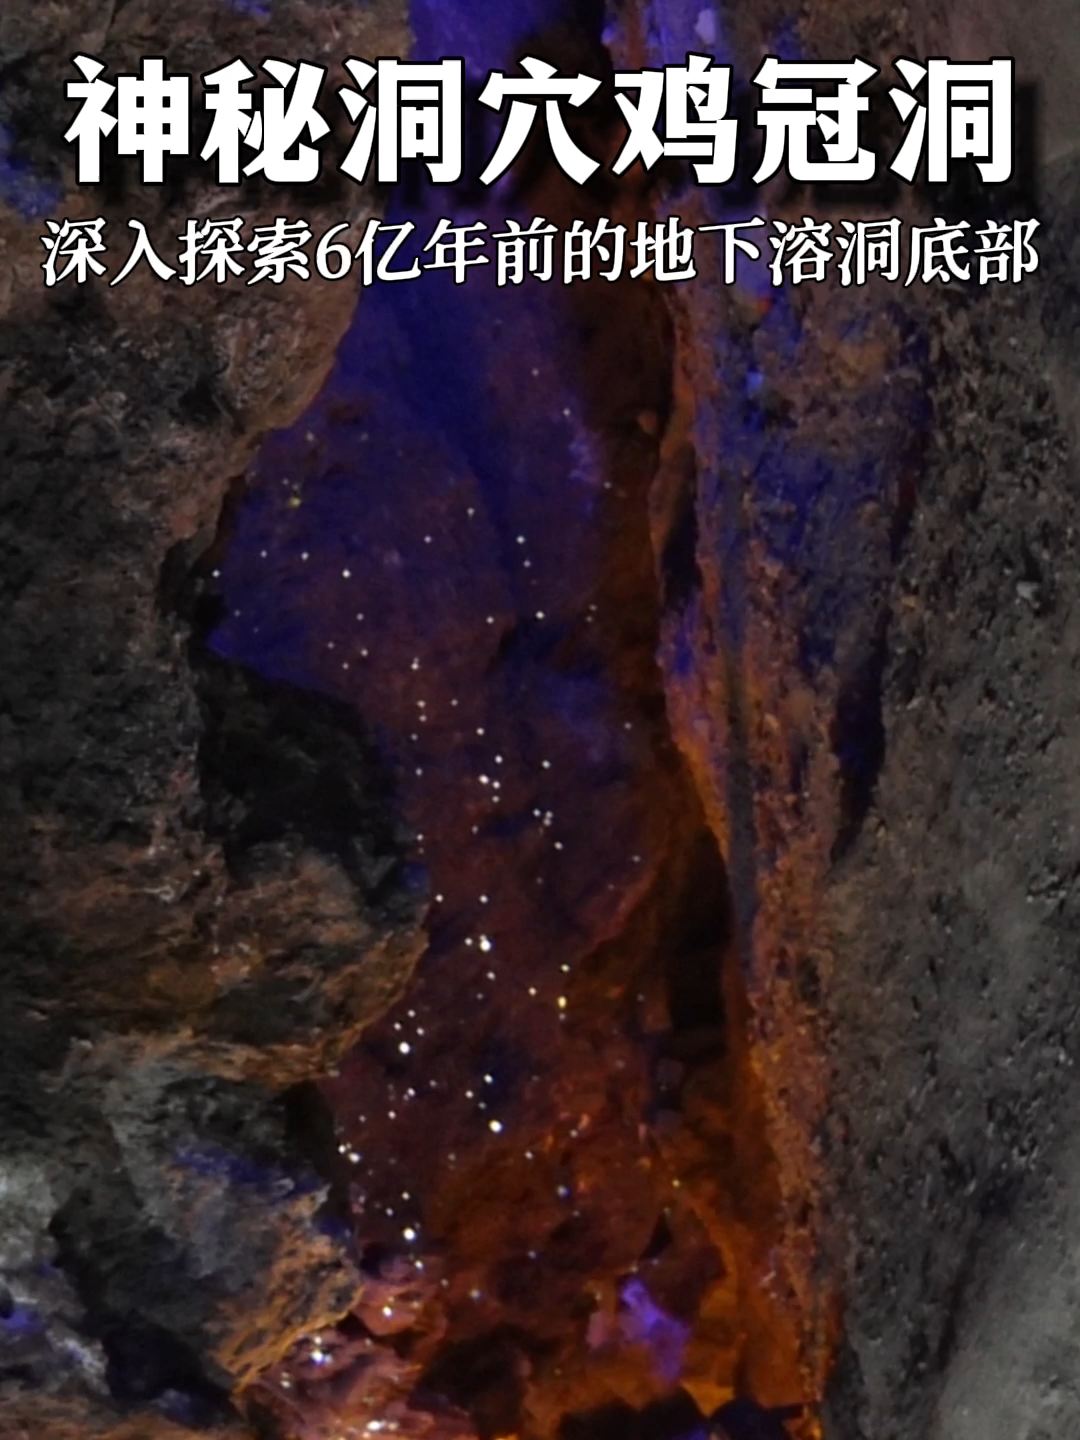 我发现了地下6亿年前形成的神秘洞穴鸡冠洞